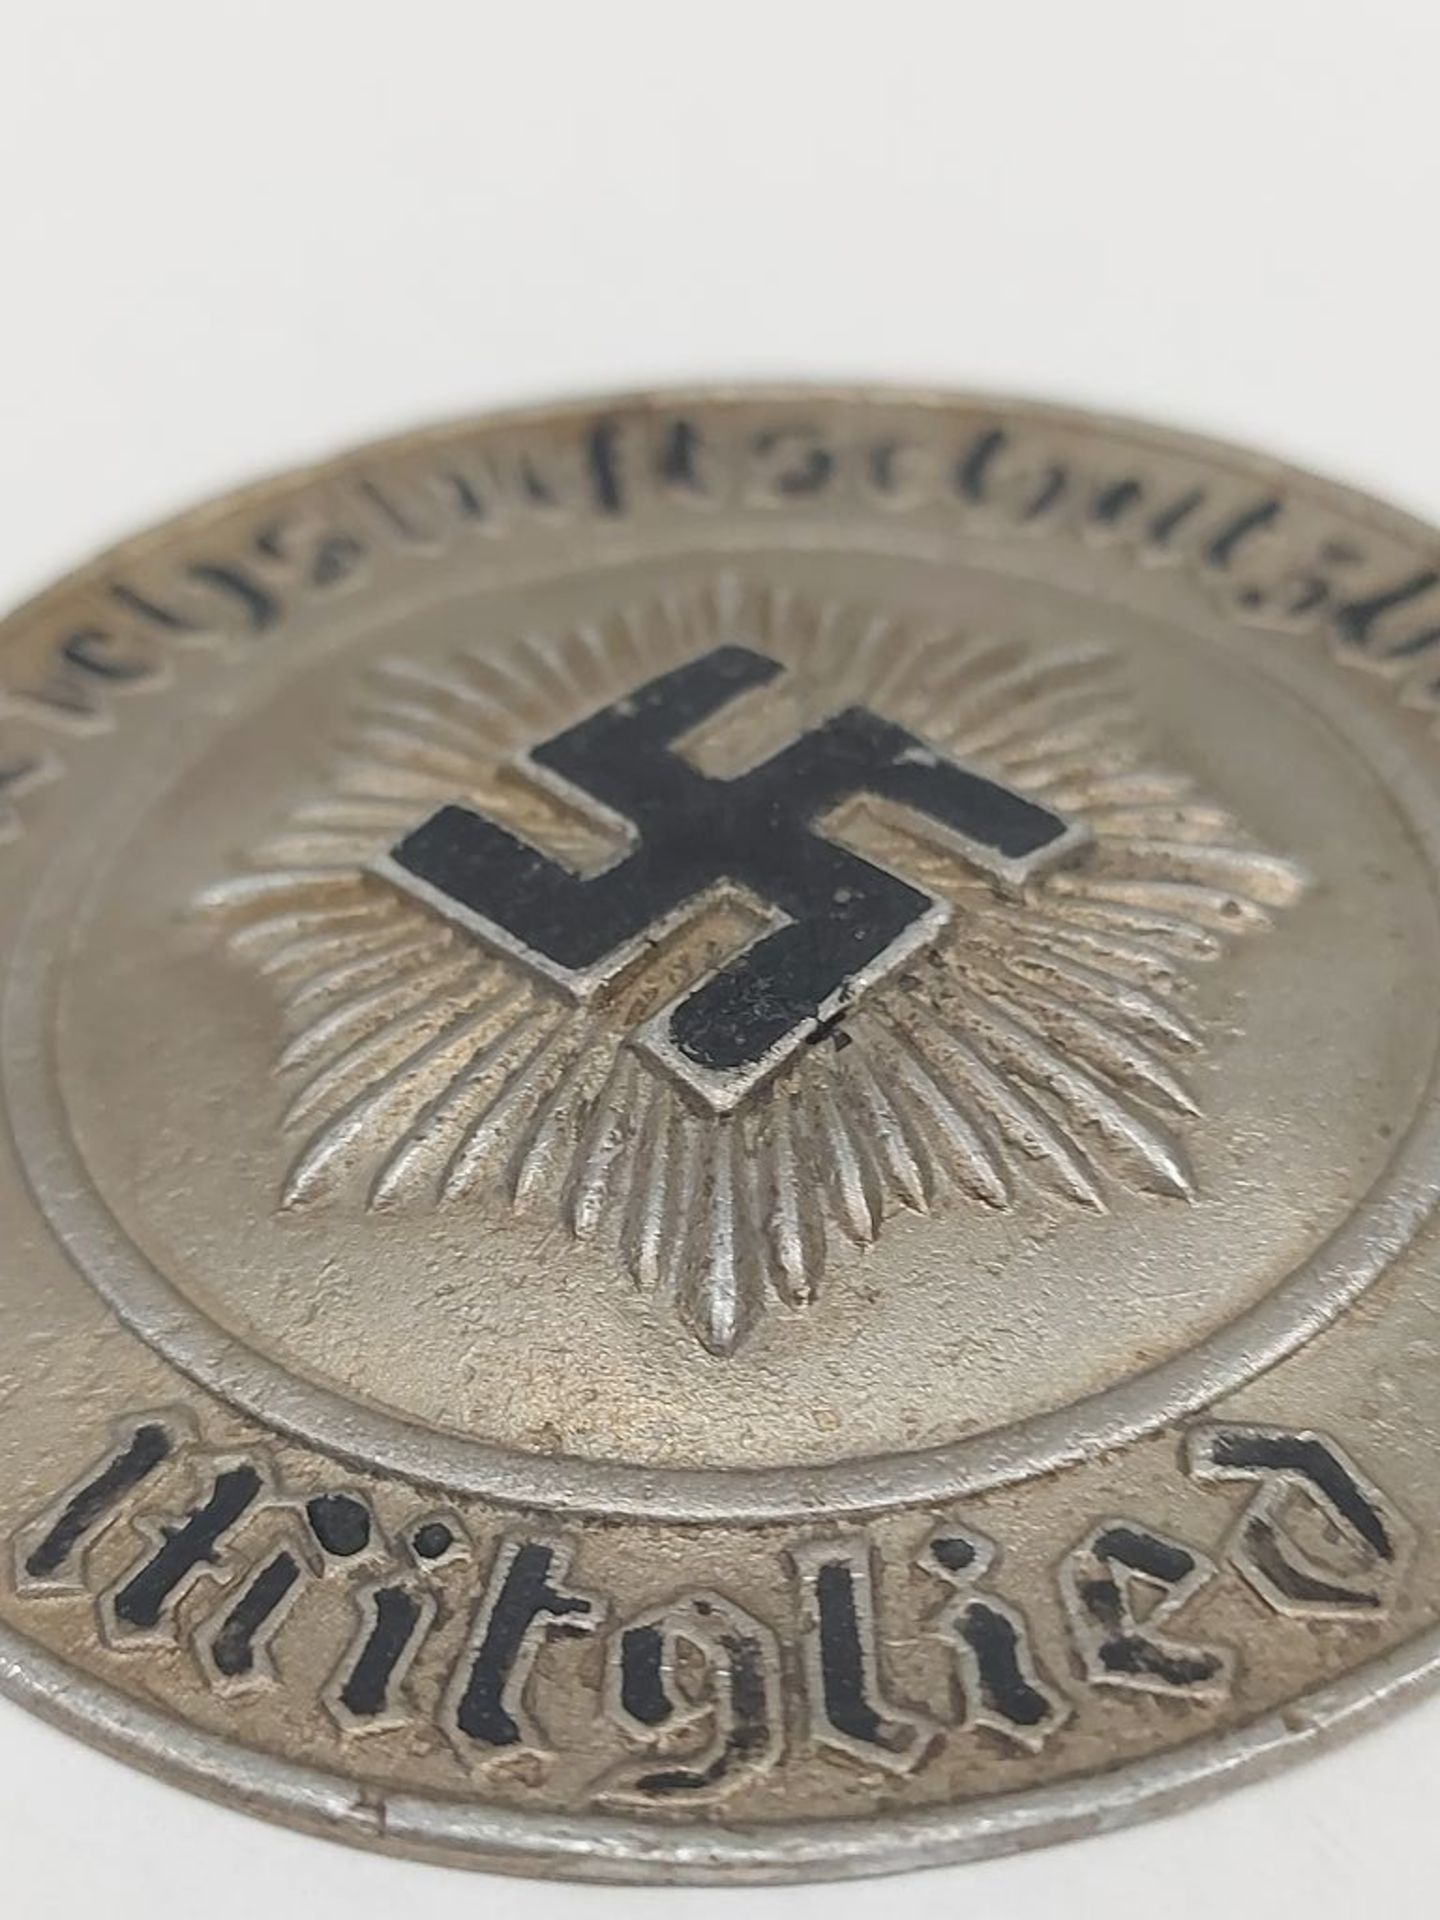 WKII Aluminiumplakette Reichsluftschutzbund - Bild 3 aus 5